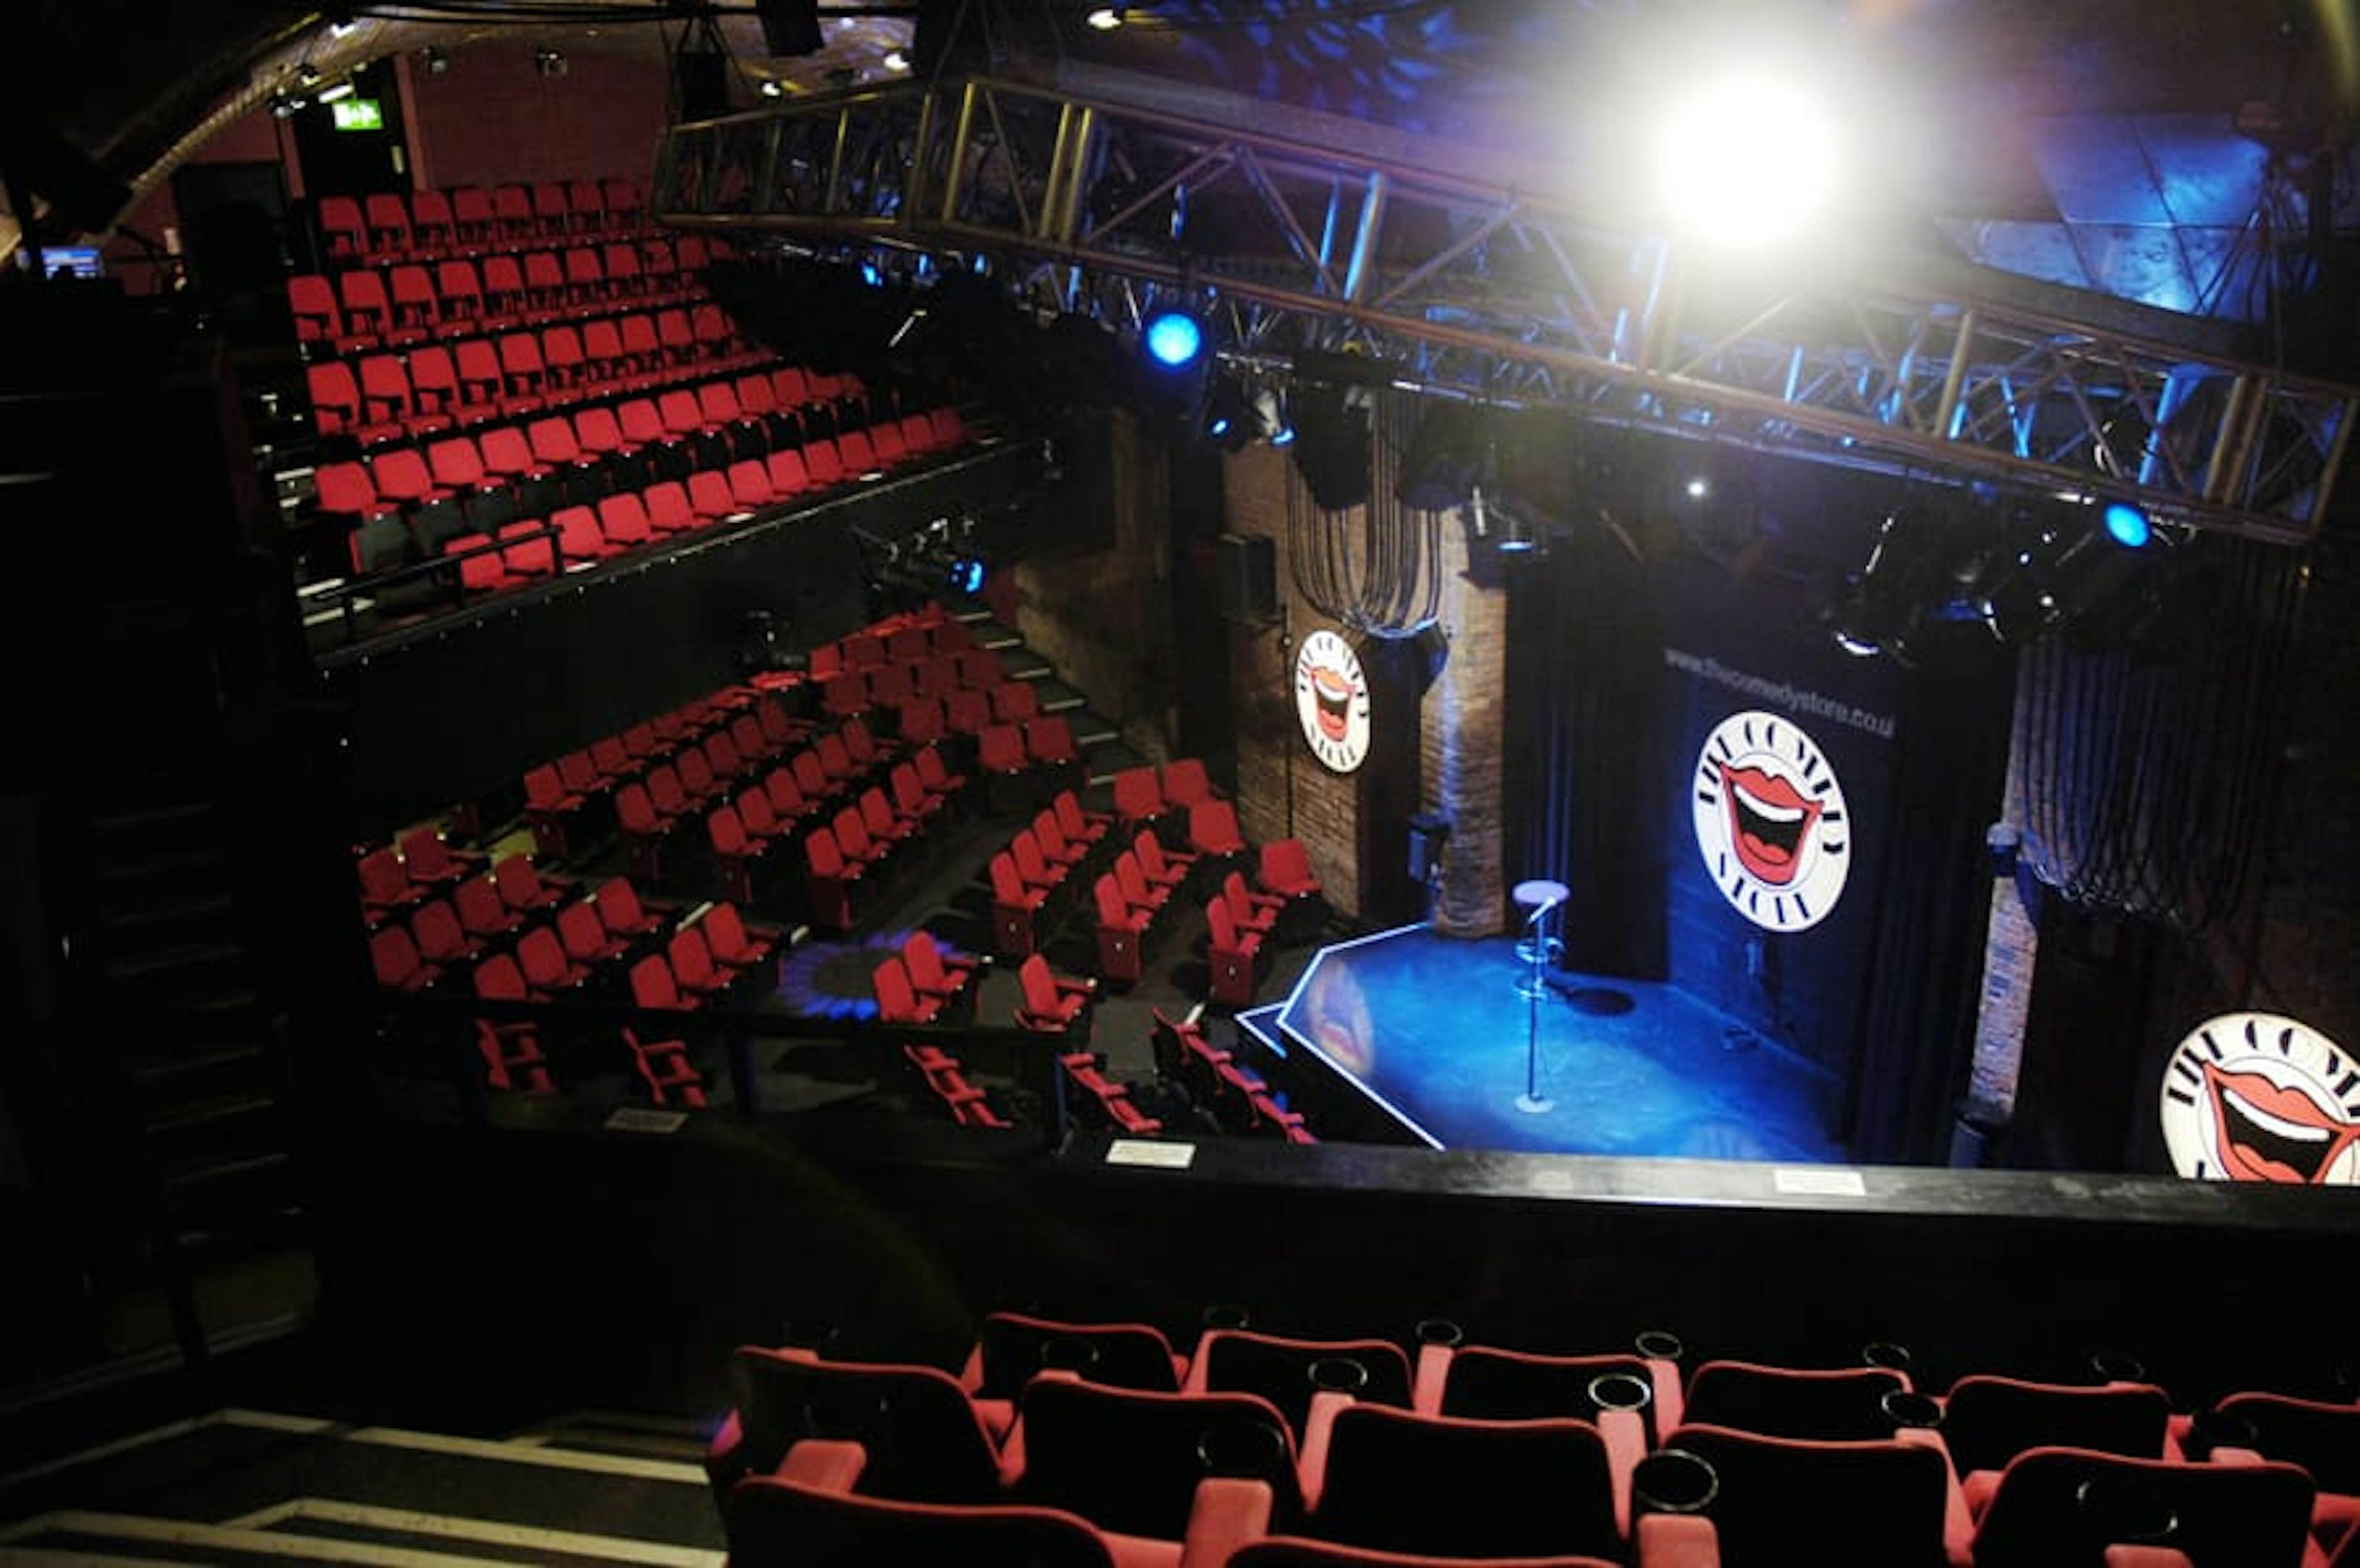 The Auditorium - Manchester